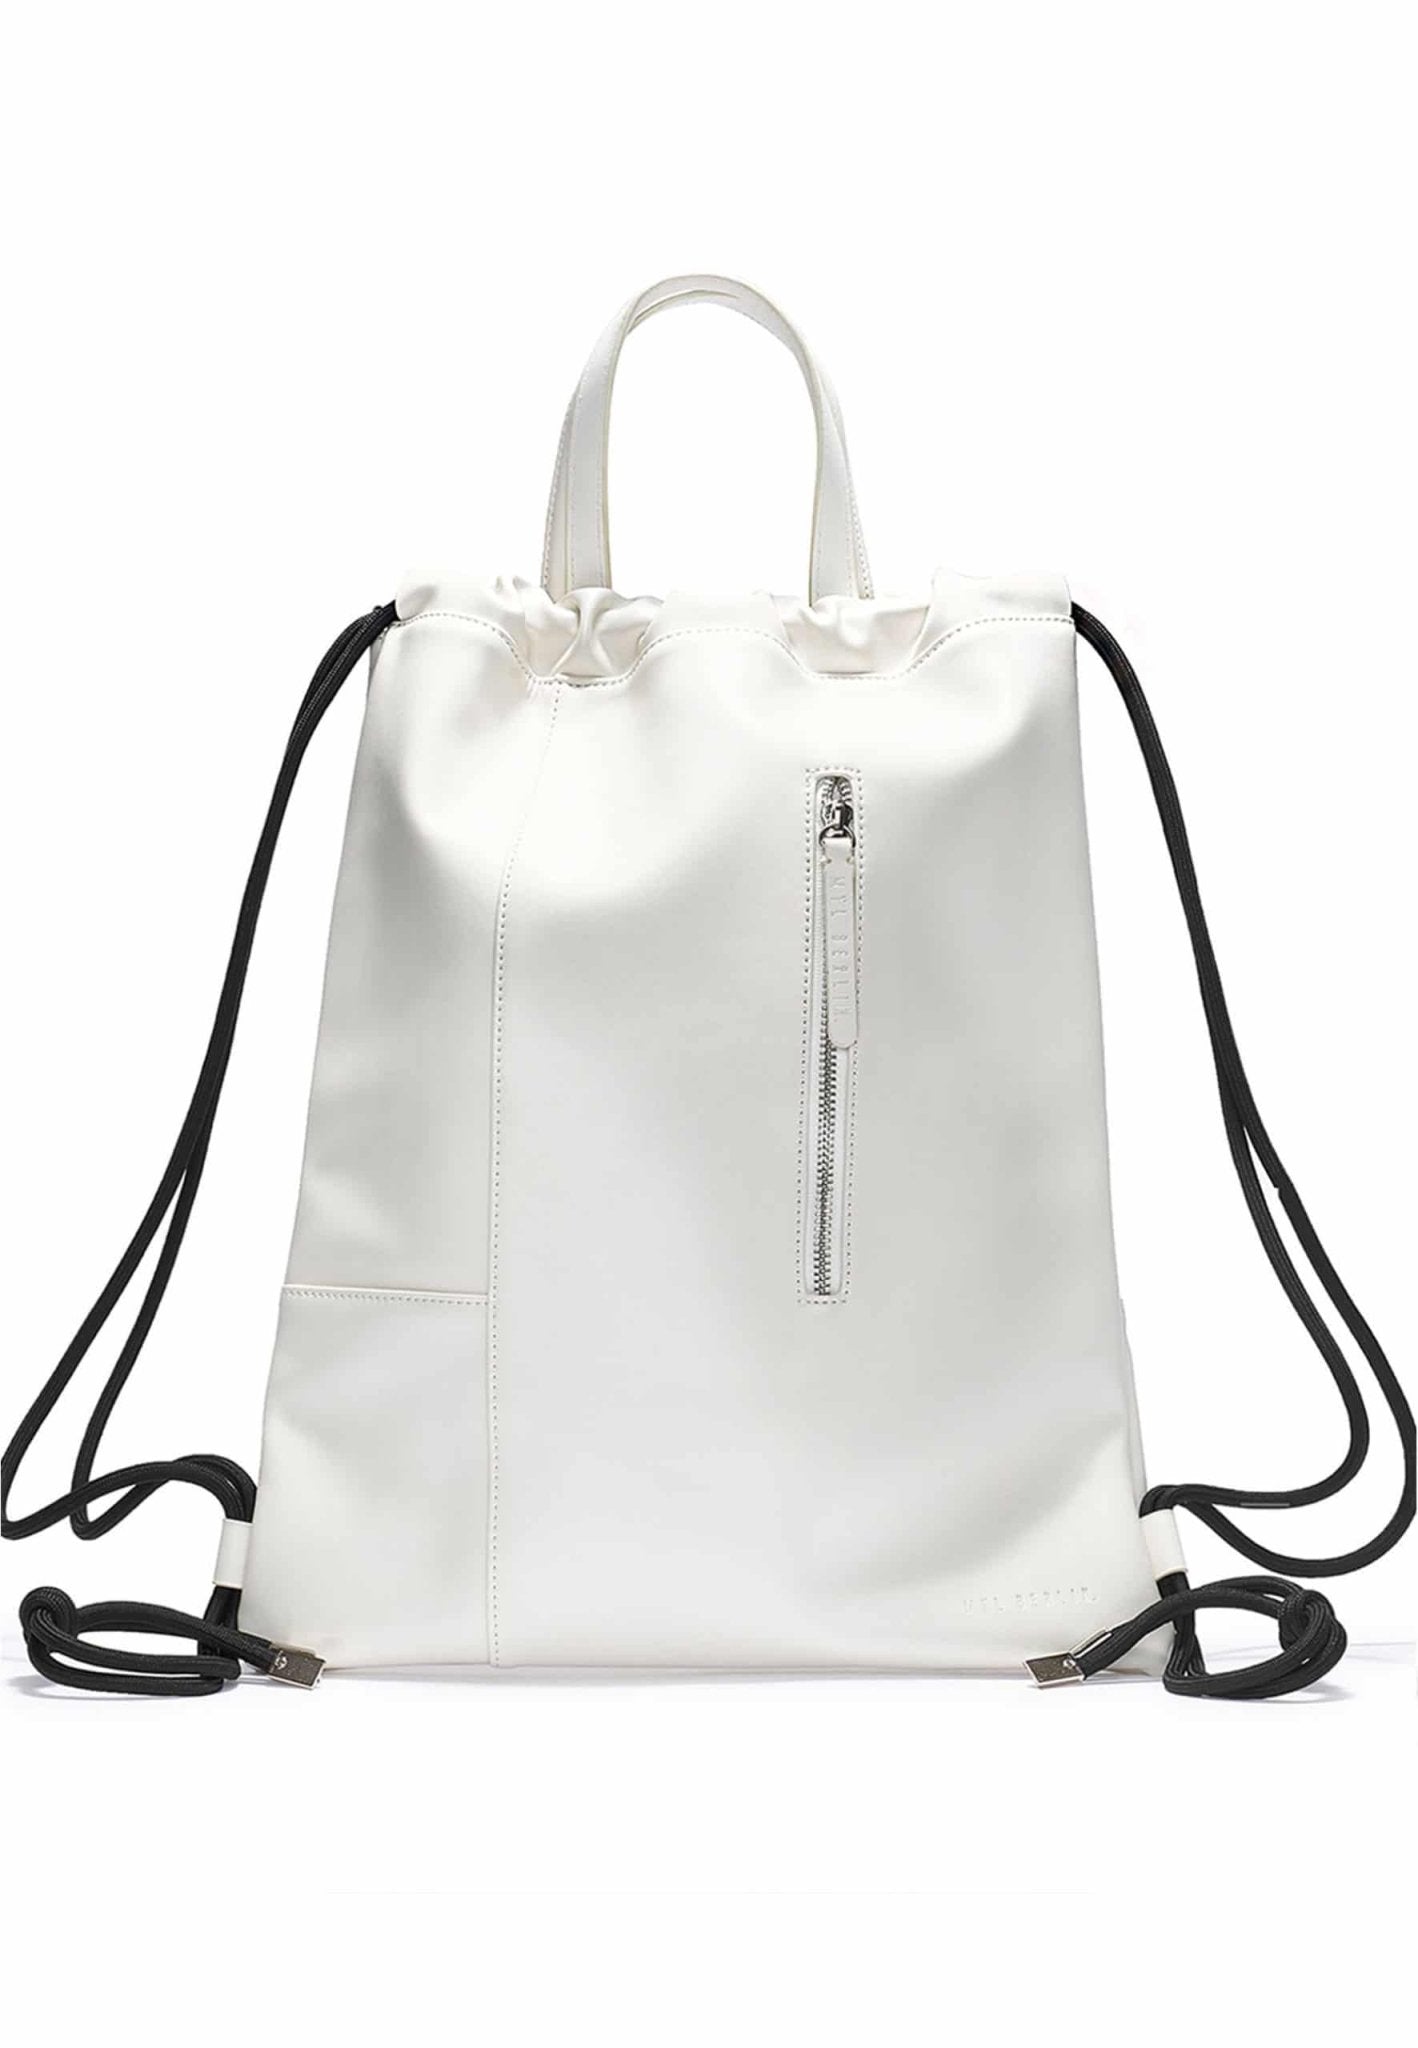 Tote Backpack Bag “Gemini” - MYL BERLIN - 4260654110029 - 4260654110029